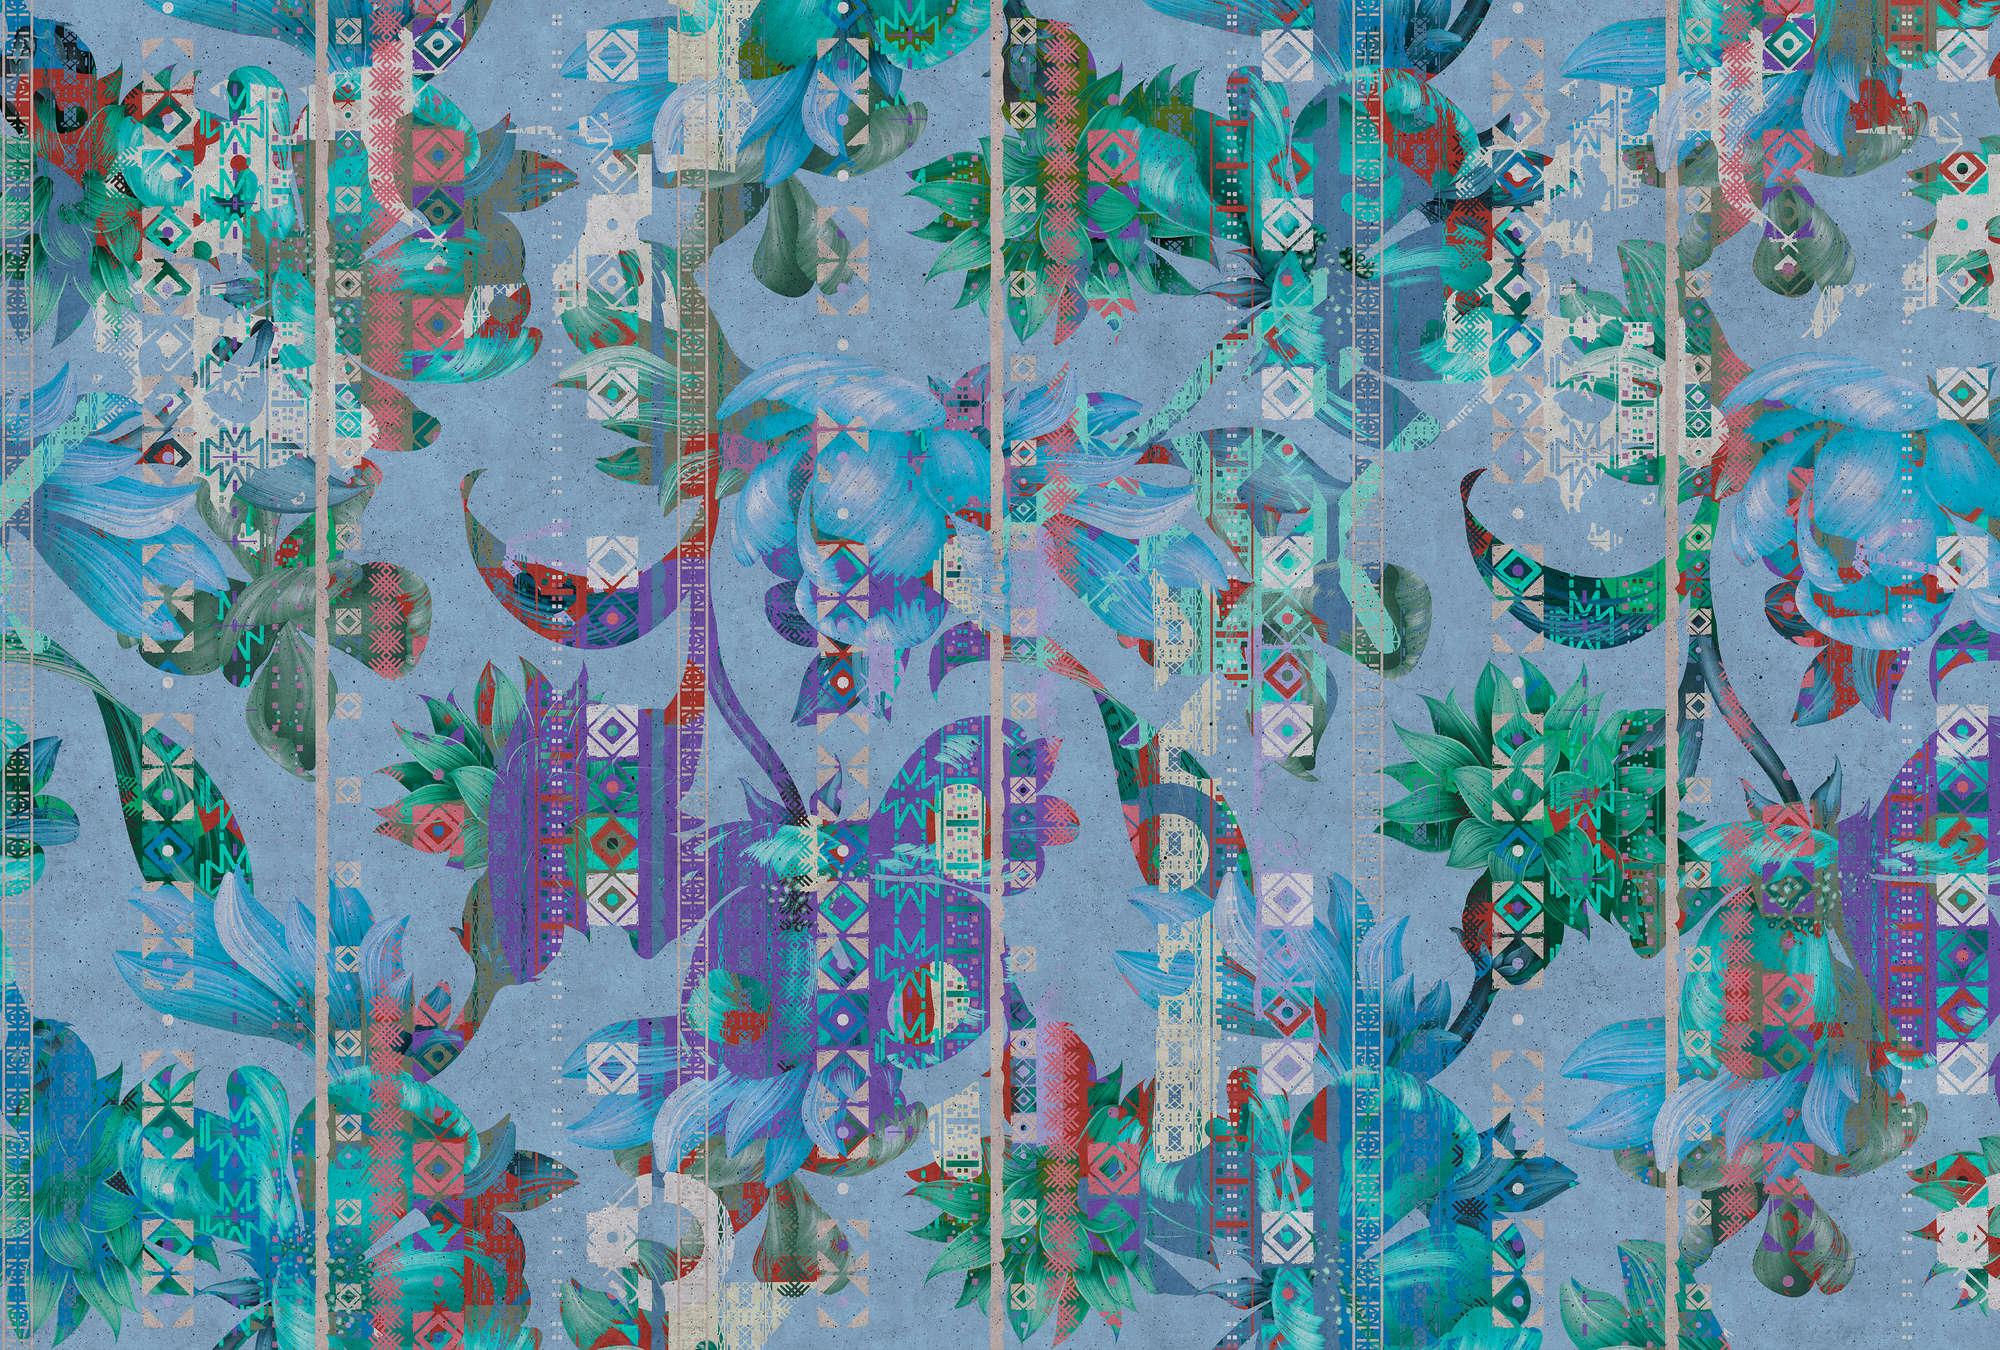             Muurschildering Vogels en Planten Patroon - Blauw, Groen
        